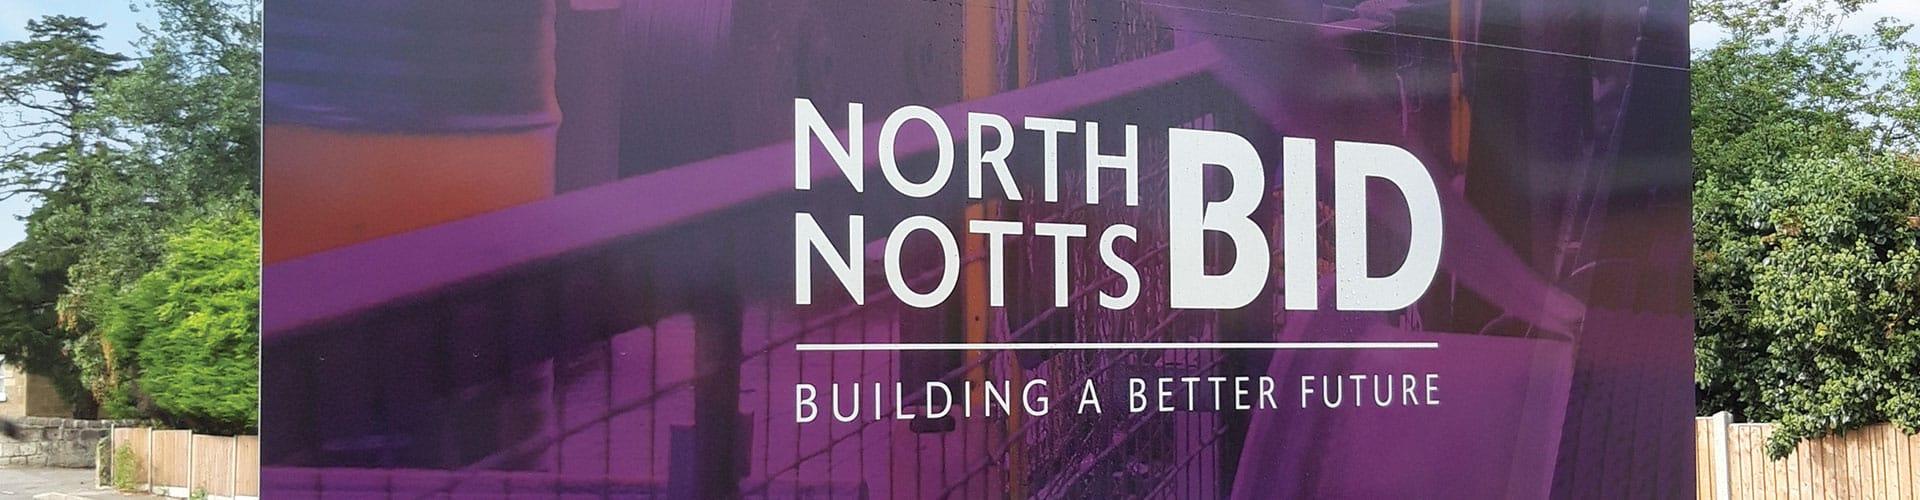 (c) Northnottsbid.co.uk